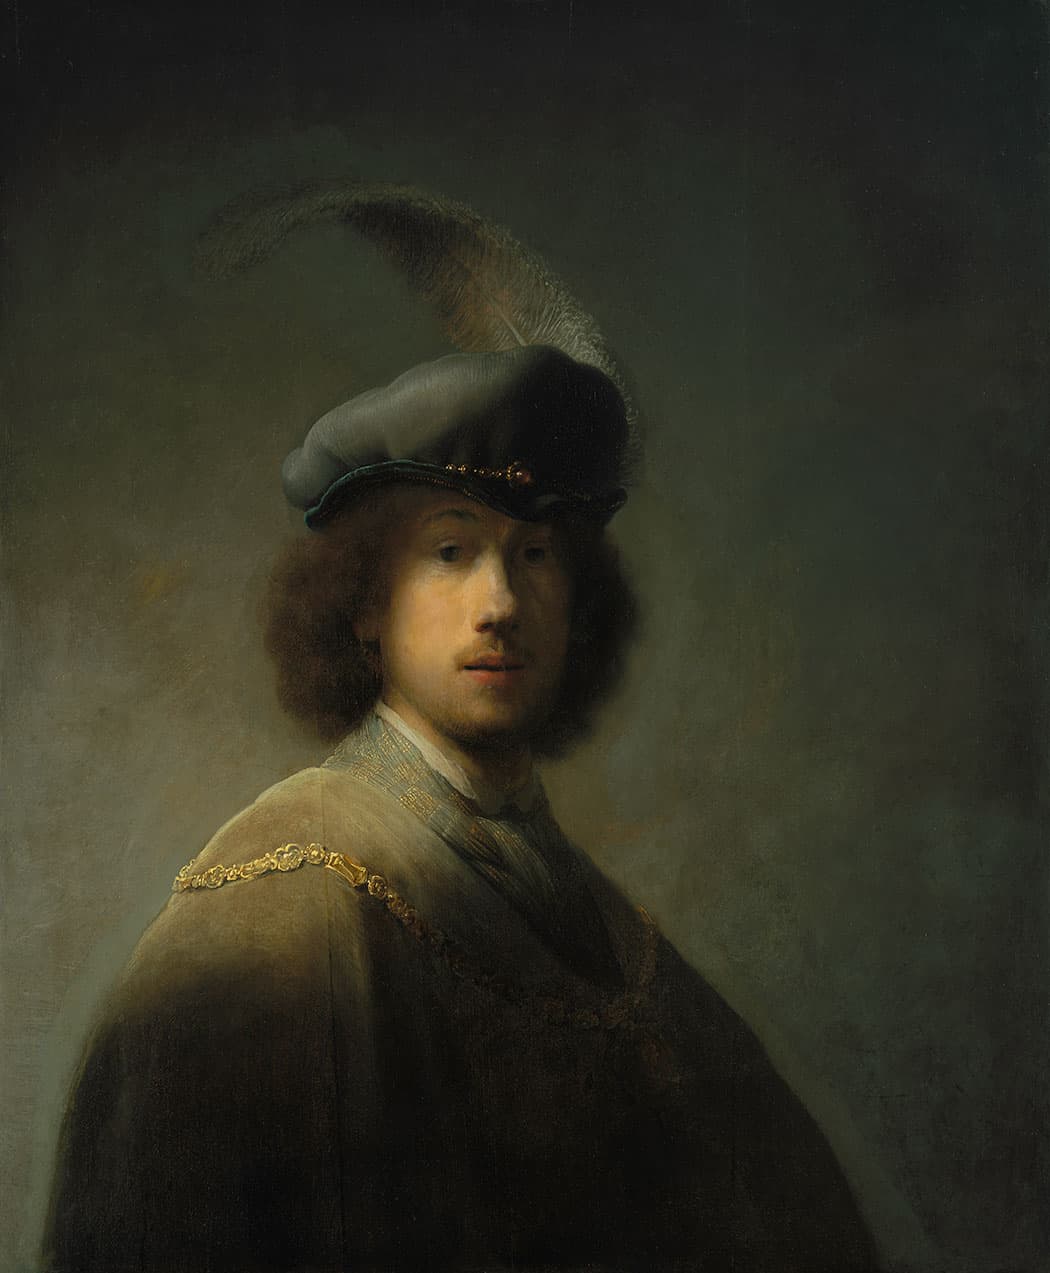 Rembrandt van Rijn , “Self-Portrait, Aged 23,” 1629, oil on oak panel. (Courtesy of Gardner Musem)